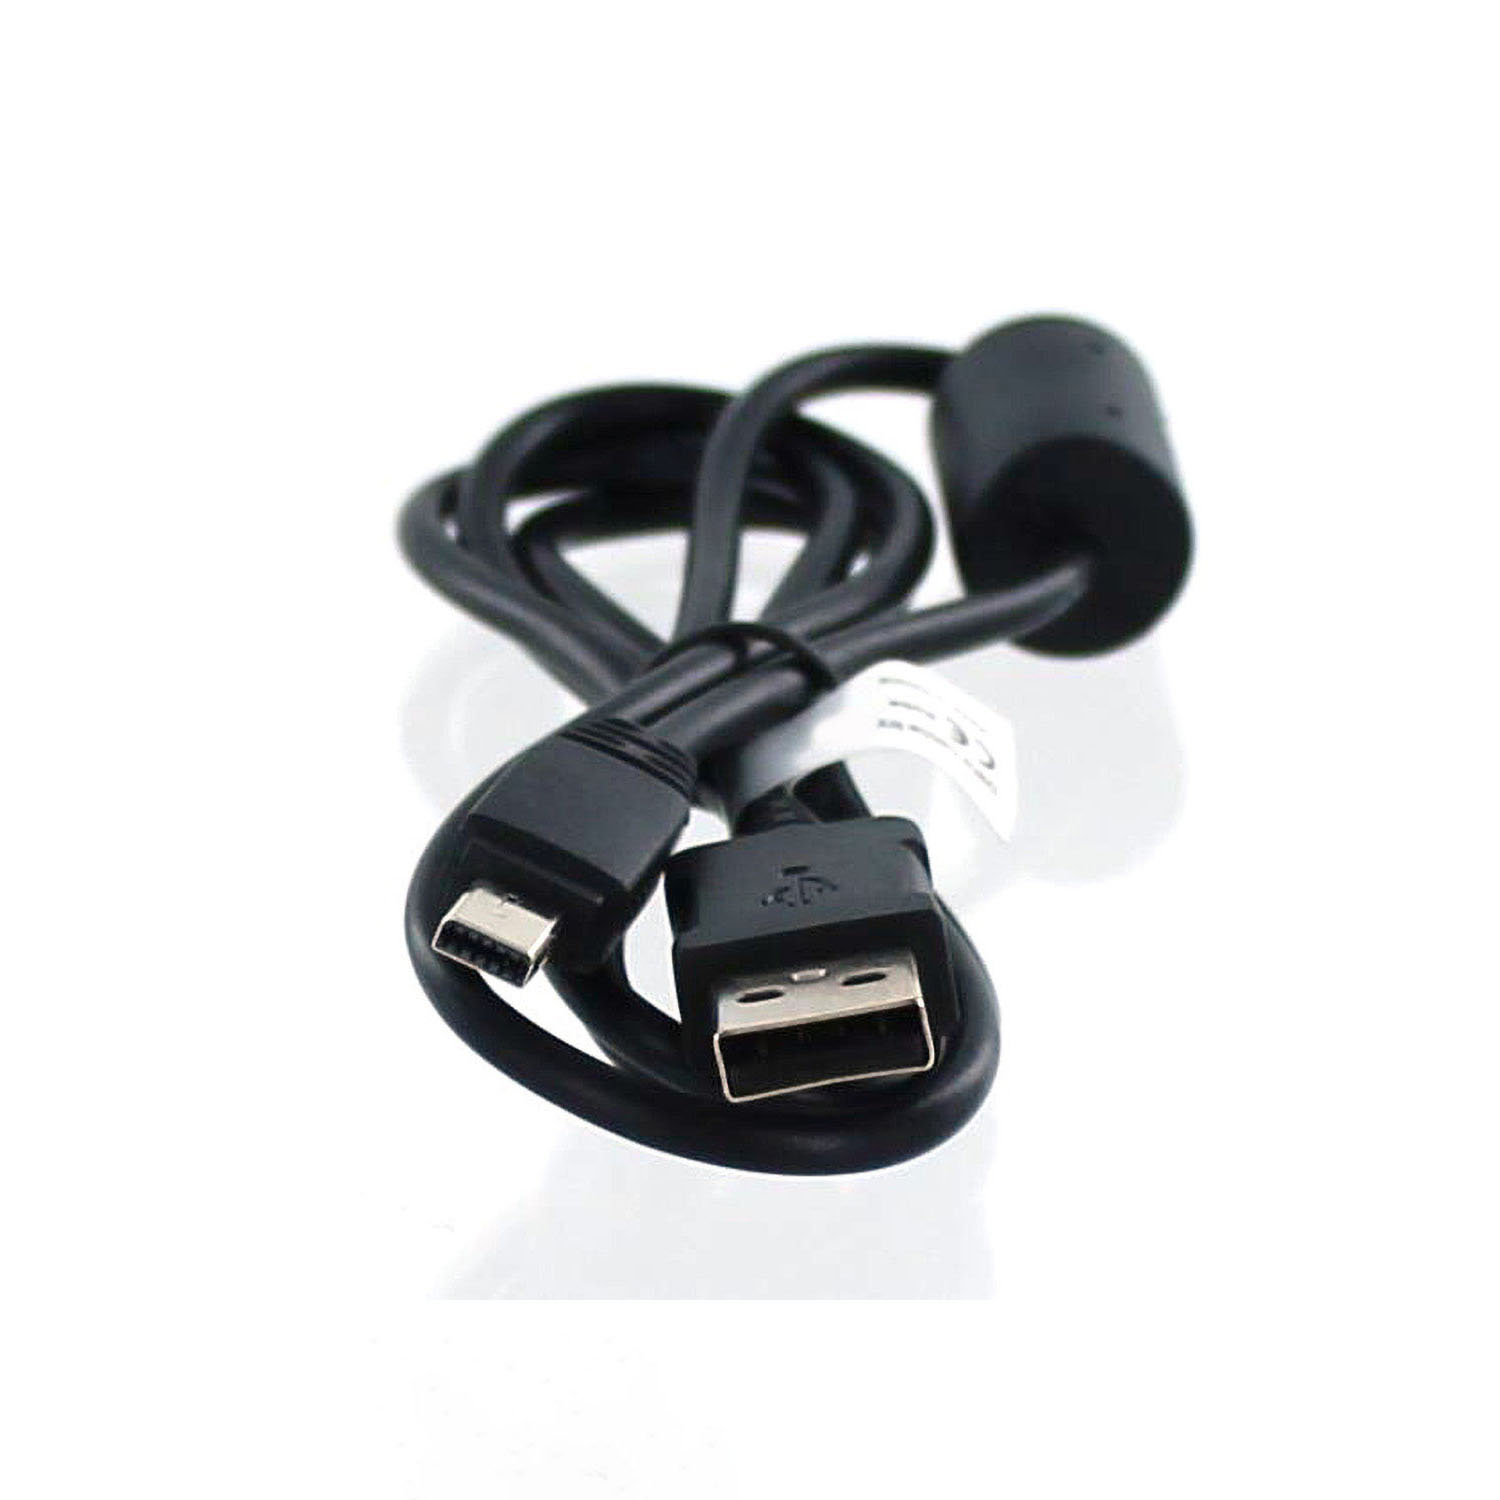 MOBILOTEC USB-Datenkabel kompatibel mit Exilim Zubehör Casio EX-Z28 Zoom Casio, schwarz